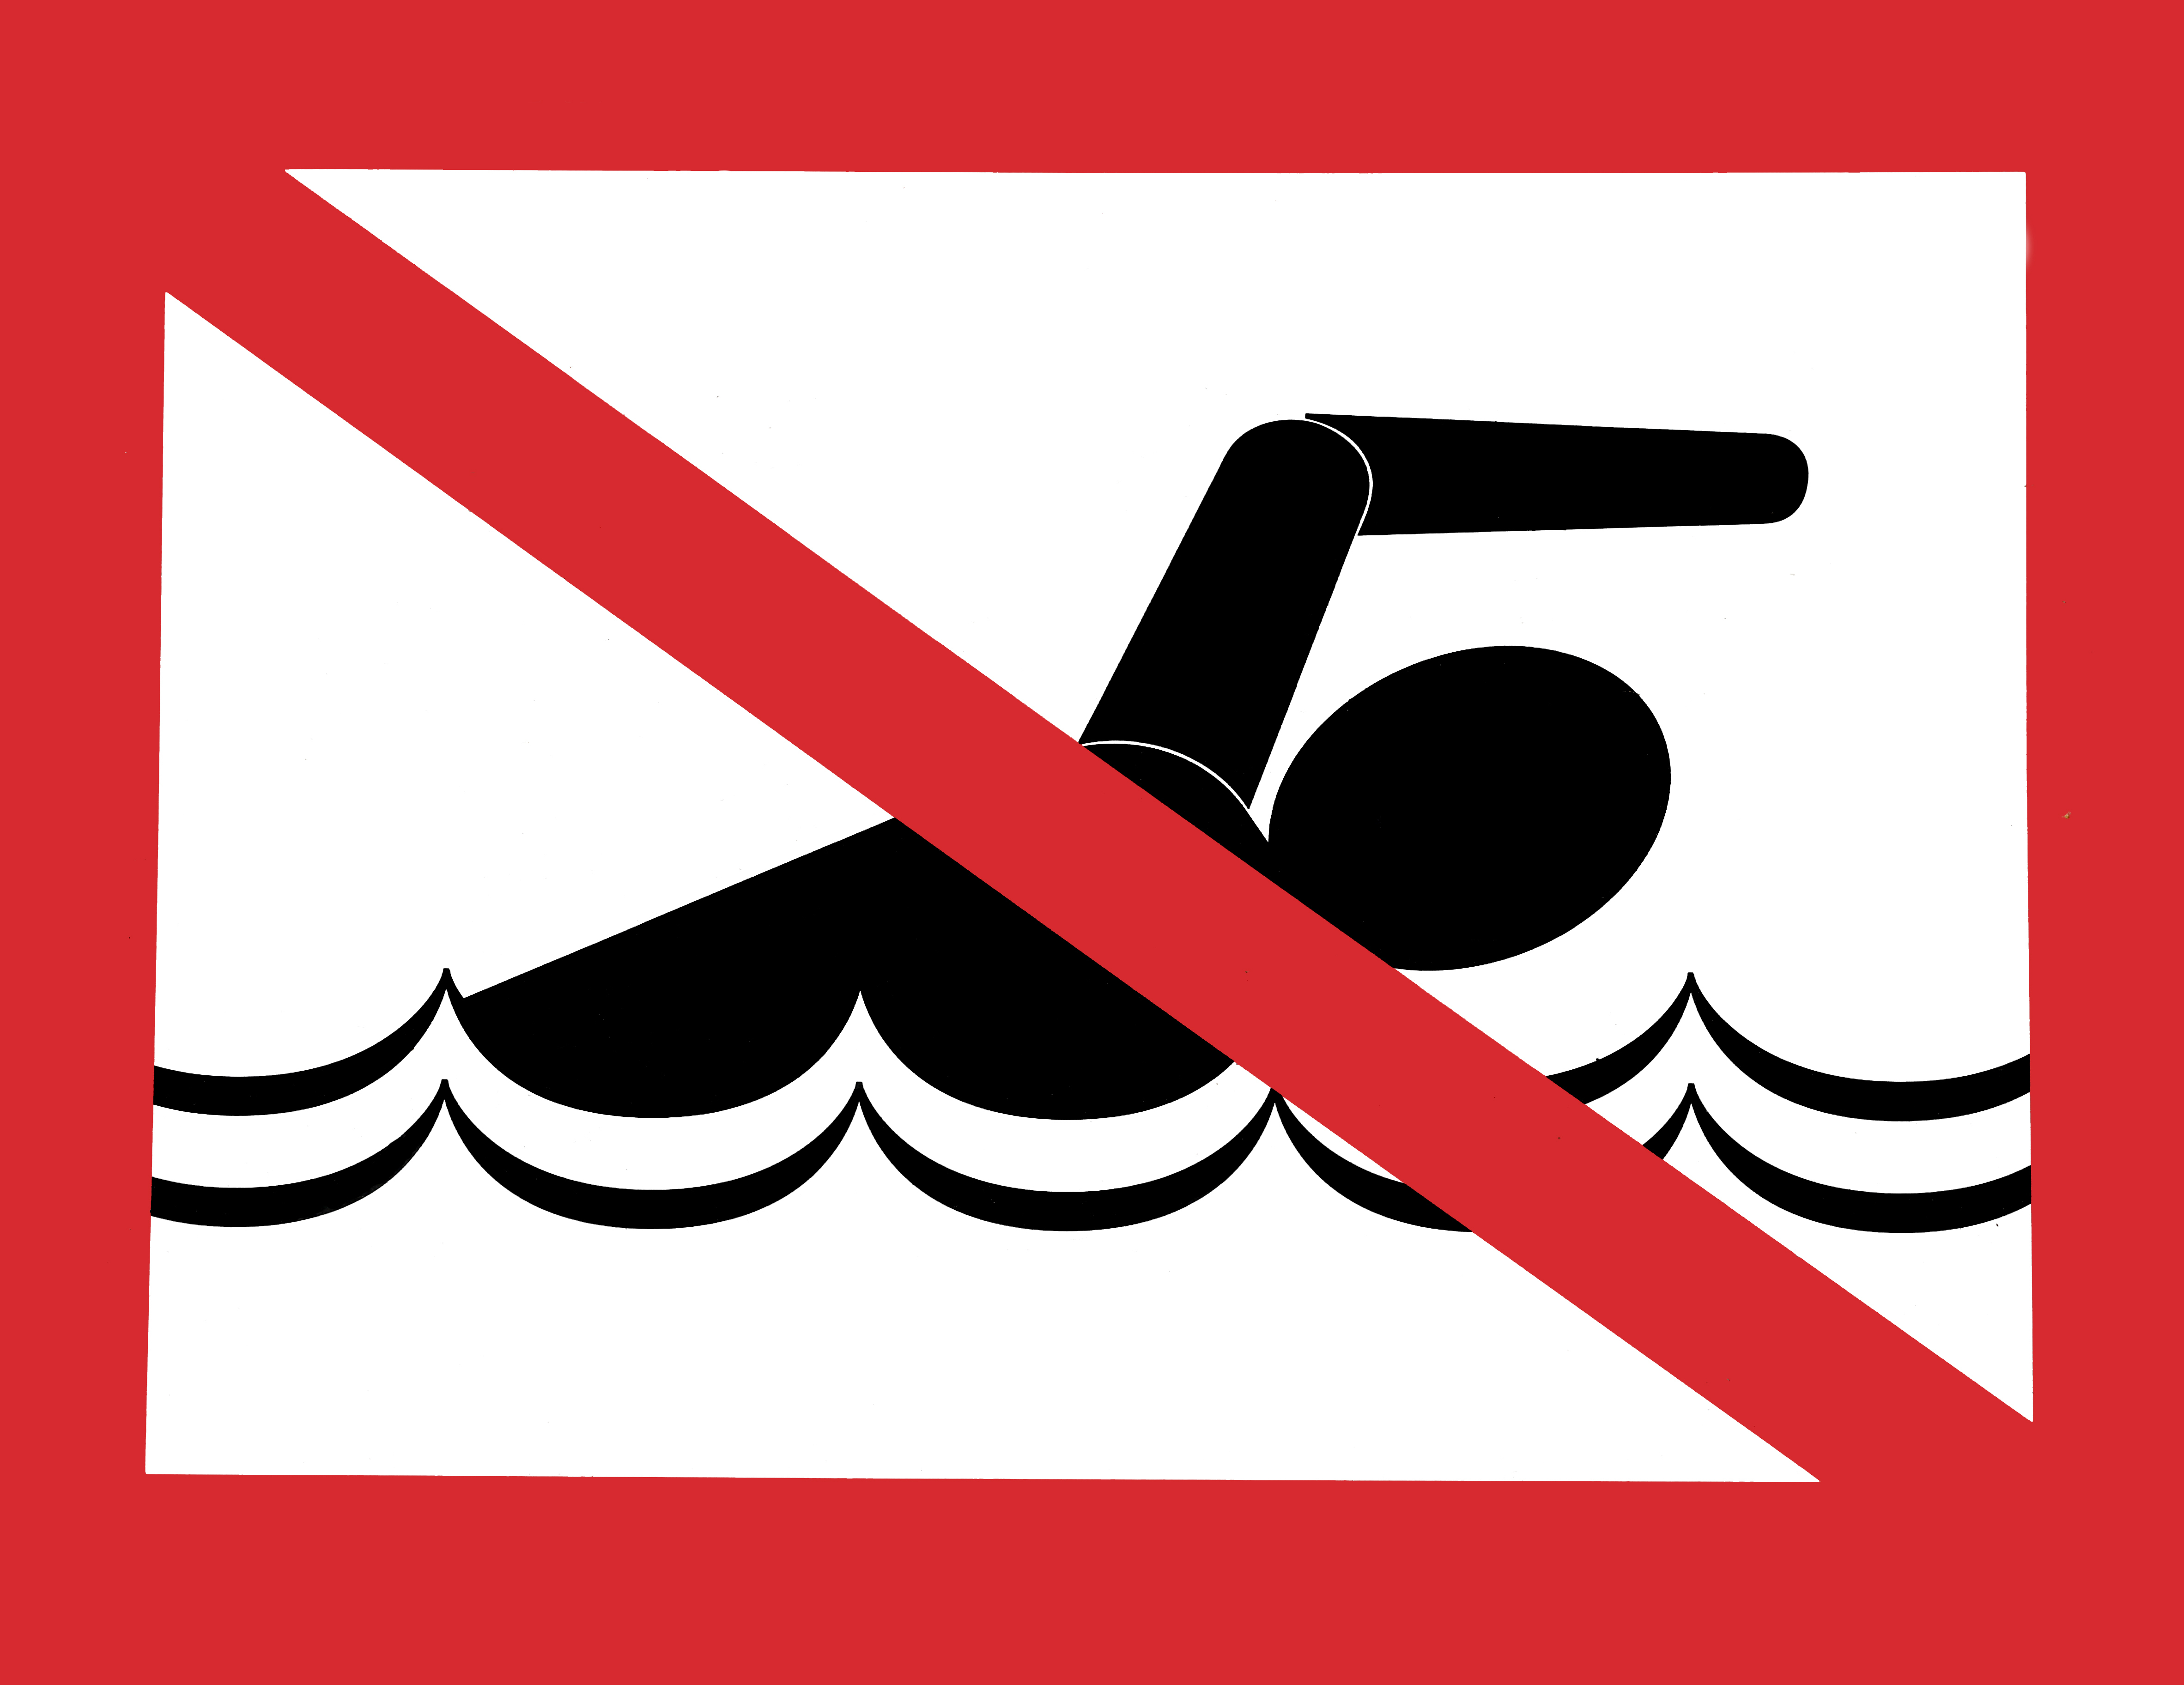     La baignade est temporairement interdite sur la plage des Dauphins au Moule

